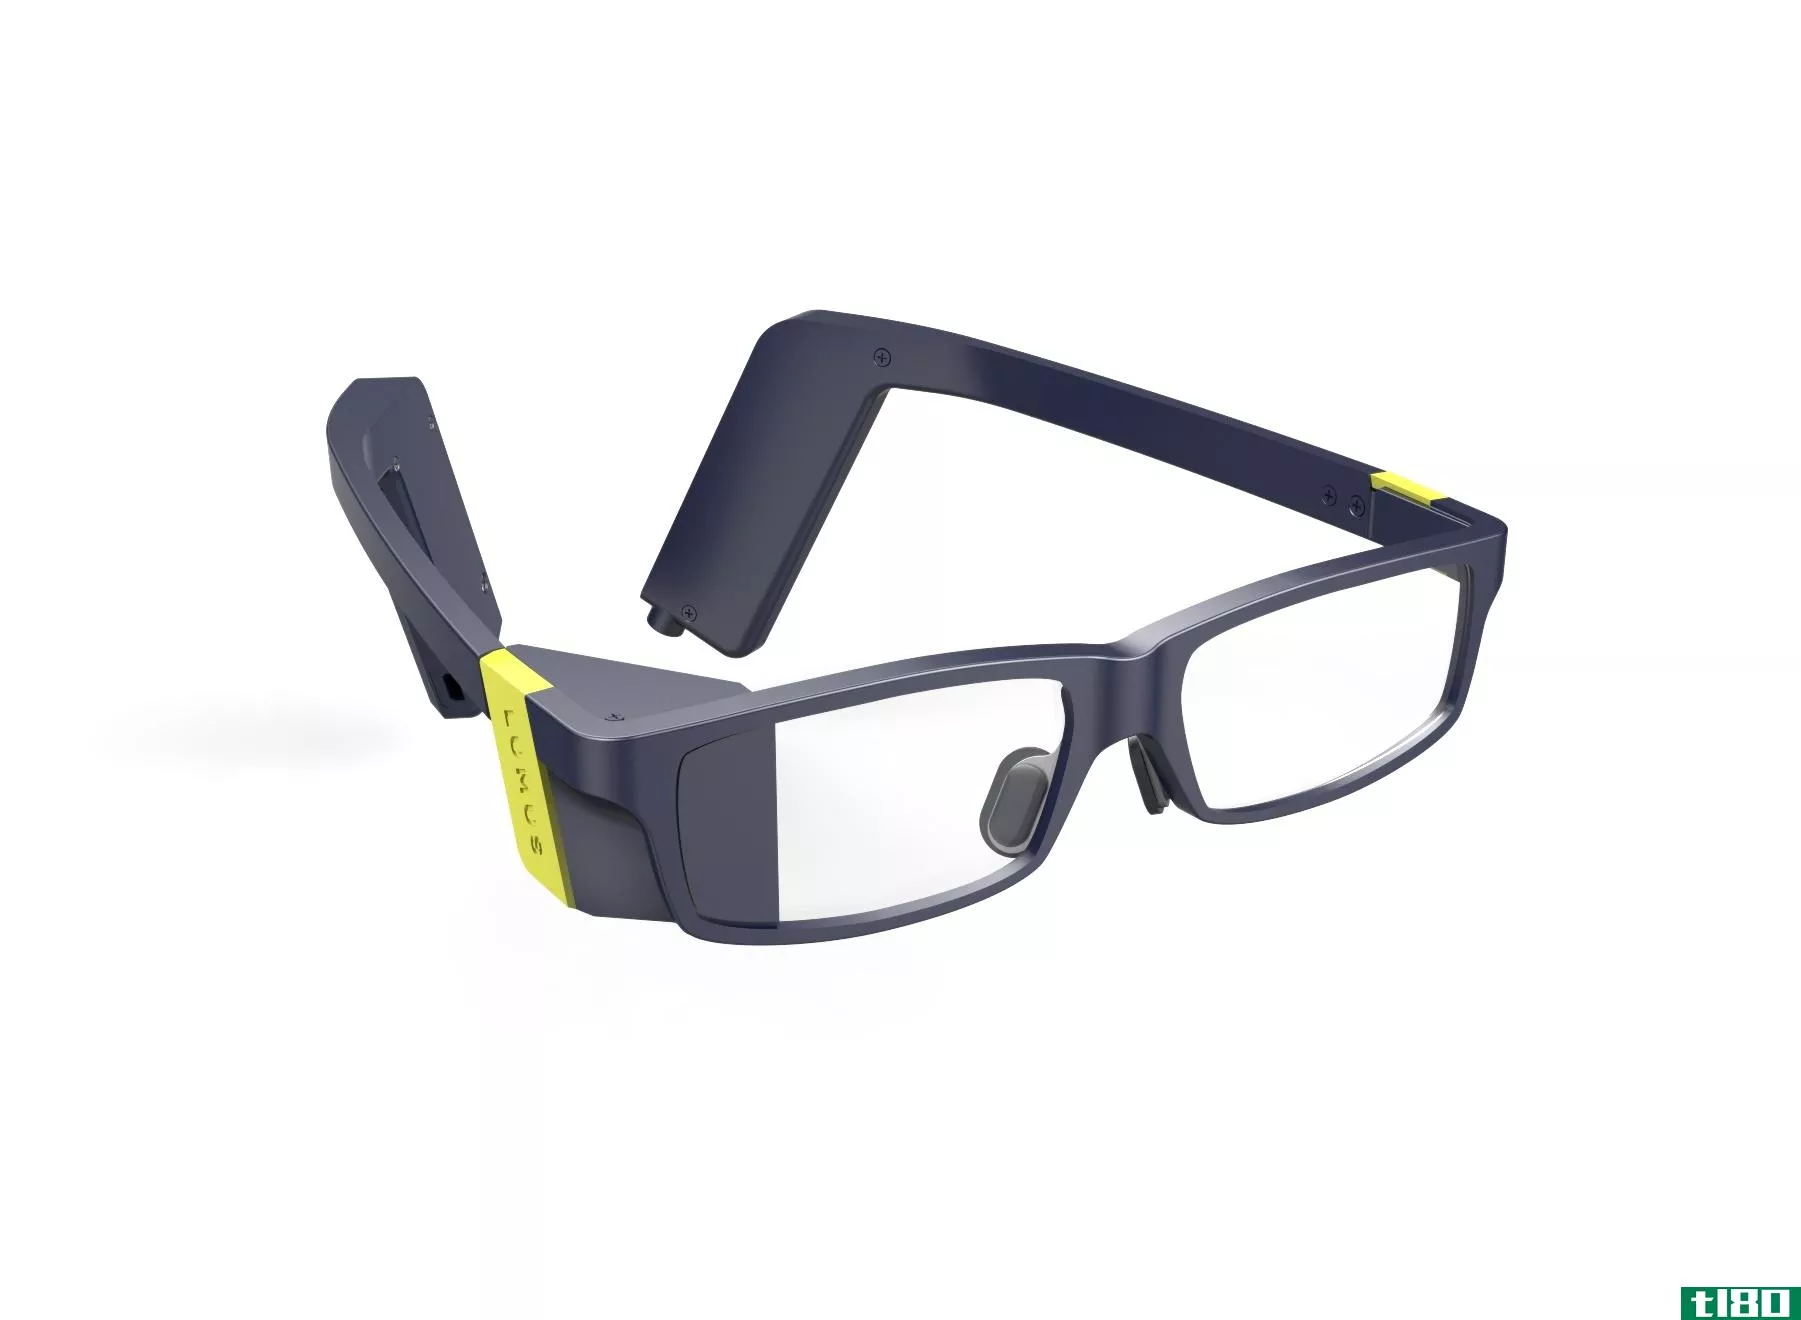 卢姆斯说，它的新增强现实眼镜是为“日常休闲用户”设计的